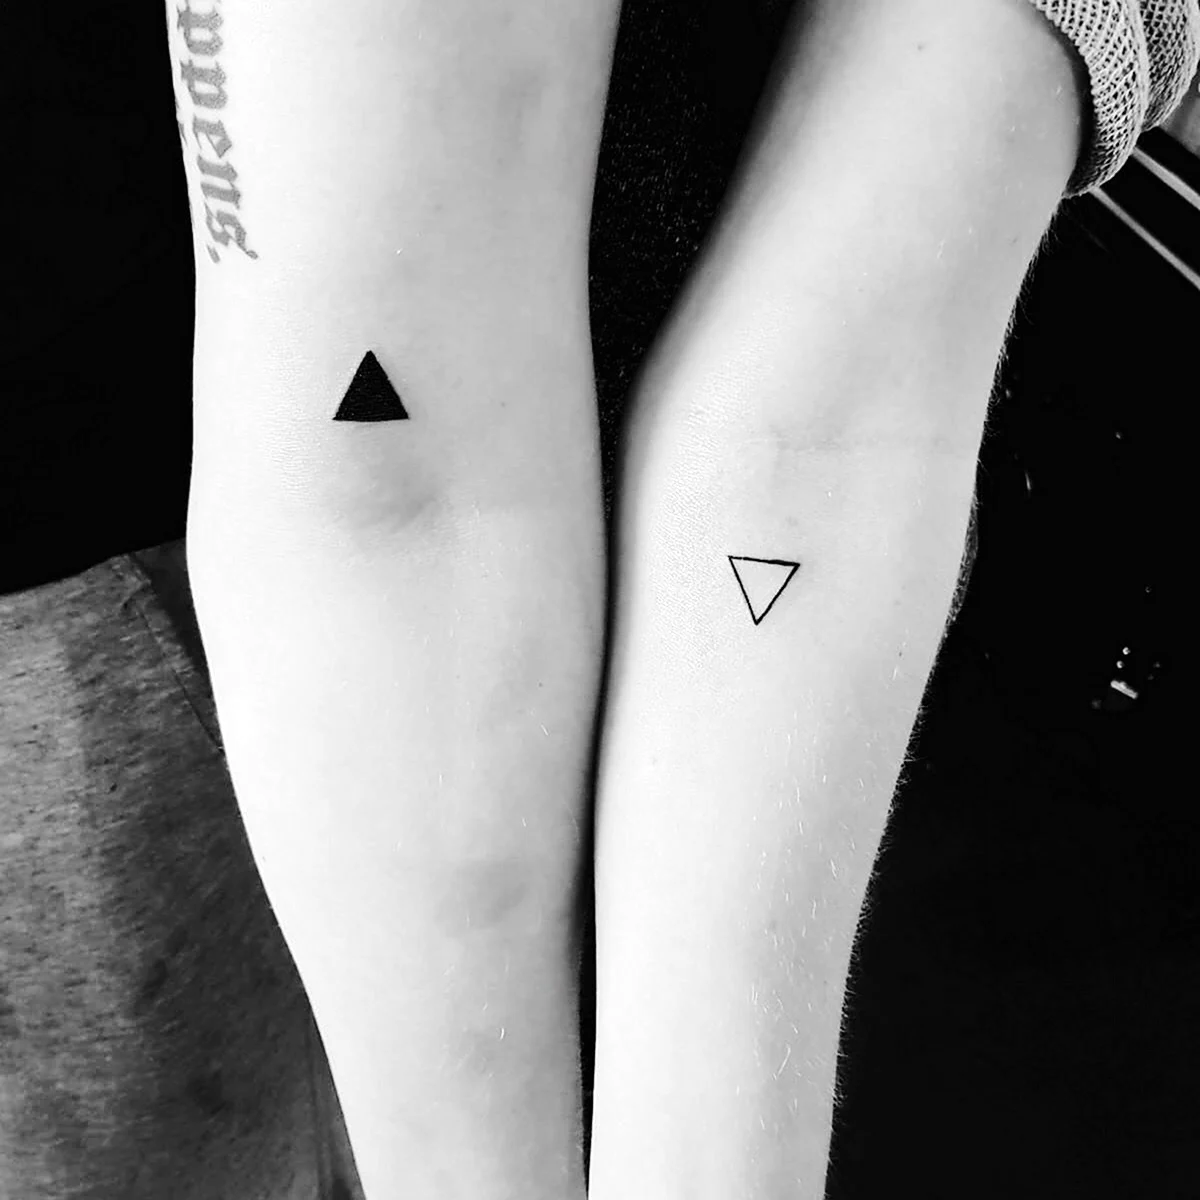 Парные тату треугольники